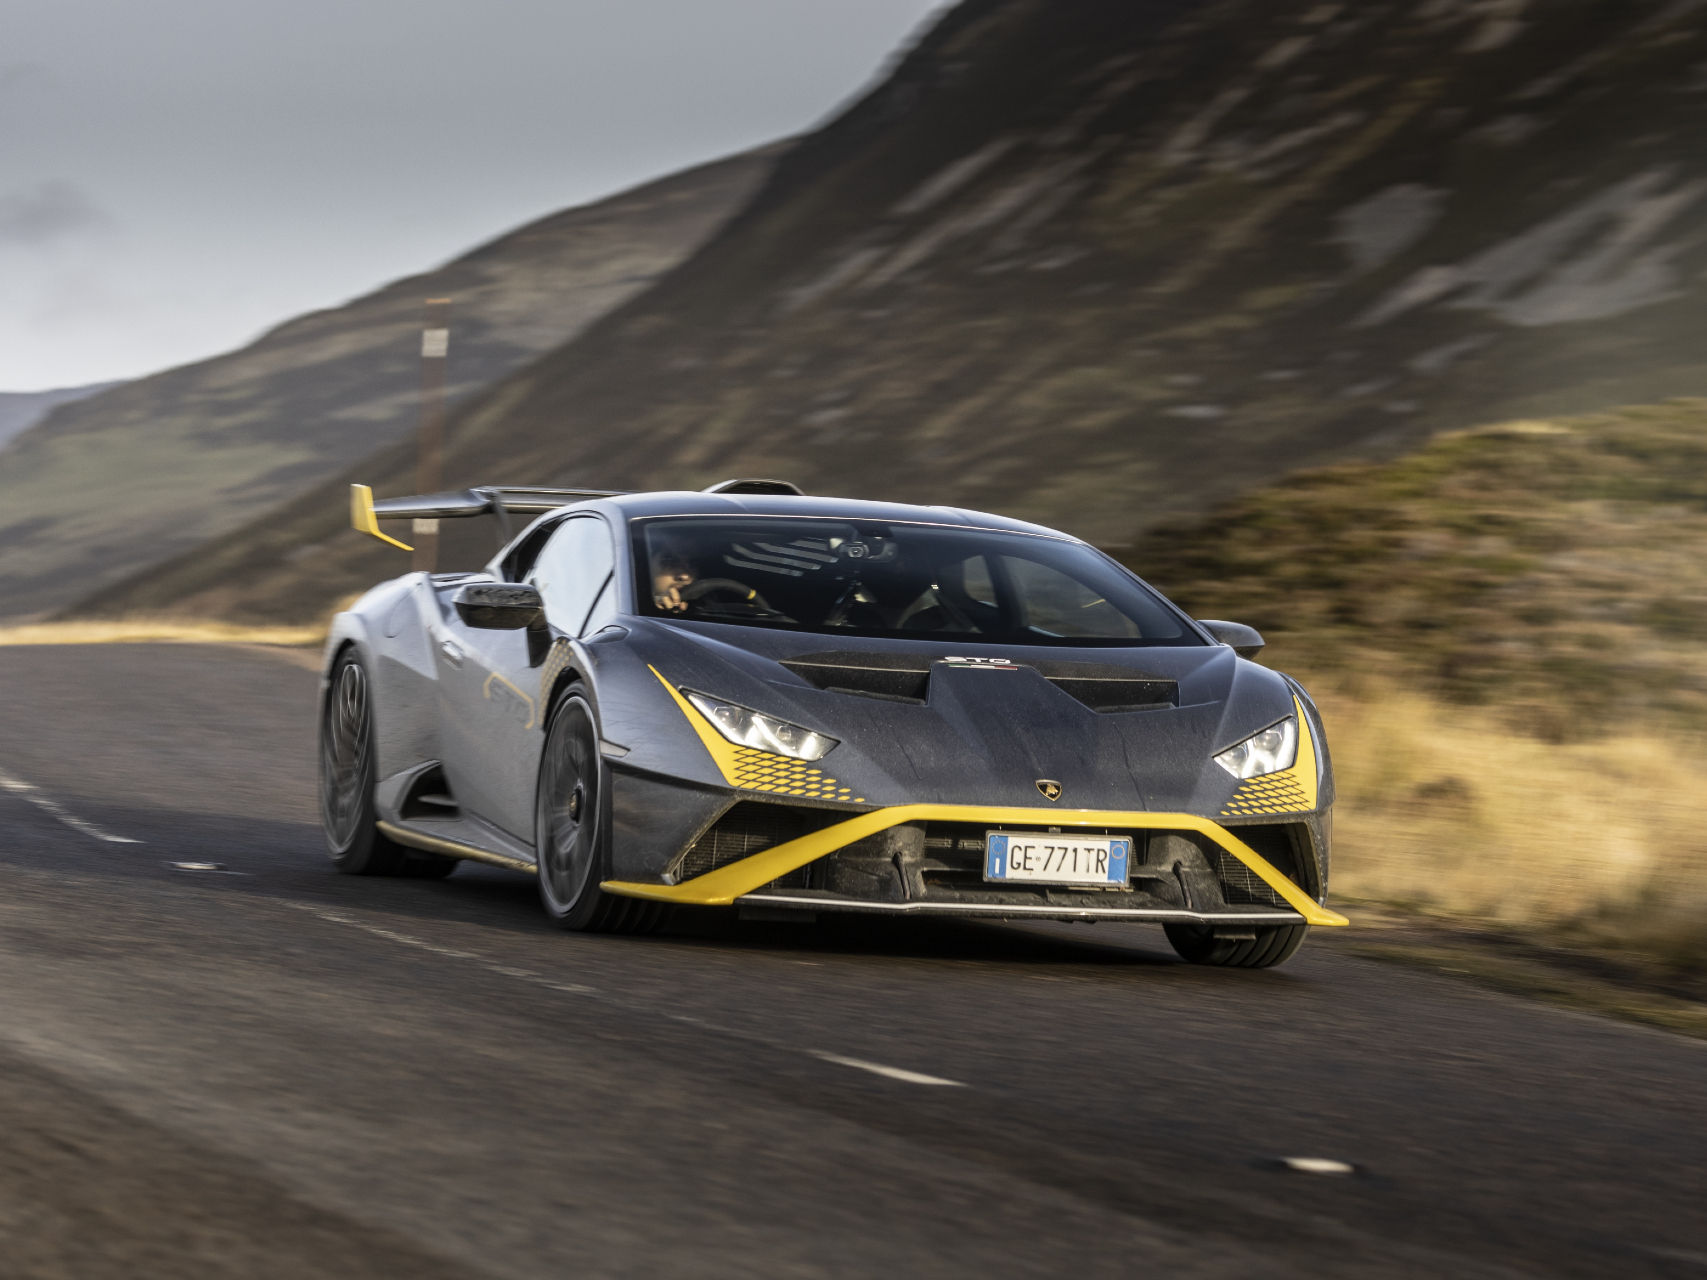 Automobili Lamborghini's Incredible 2021 In Terms Of Car Sales - ZigWheels